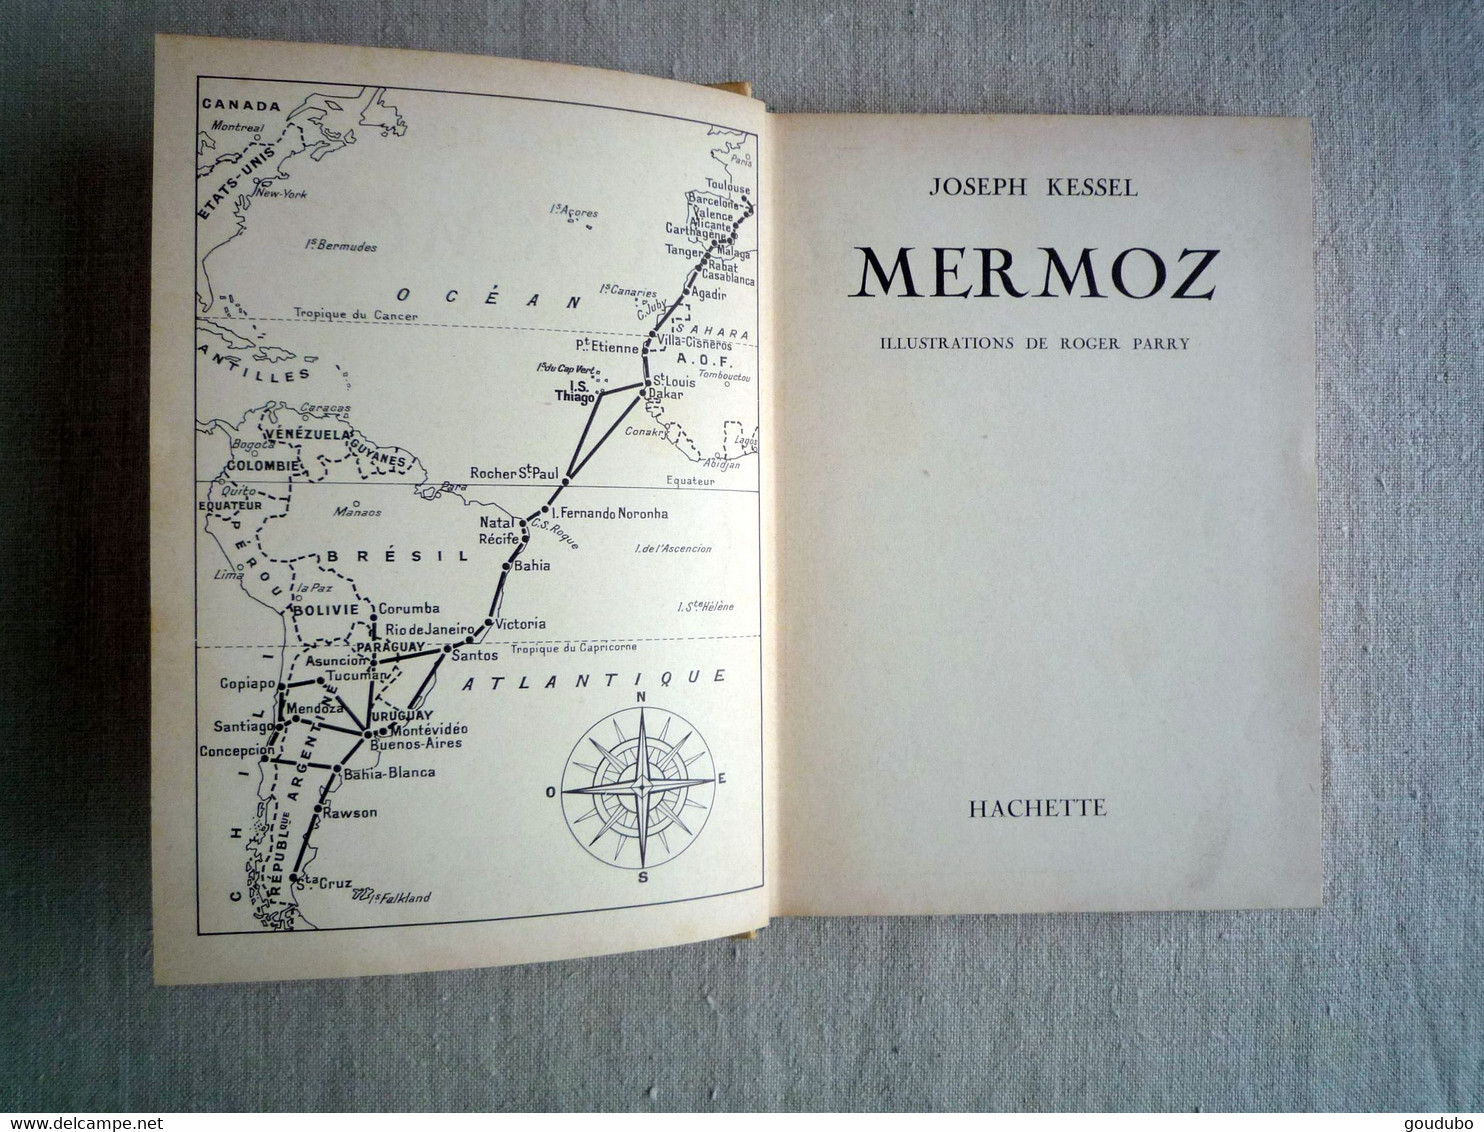 Joseph Kessel Mermoz Illustrations Roger Parry Hachette 1956. - Hachette